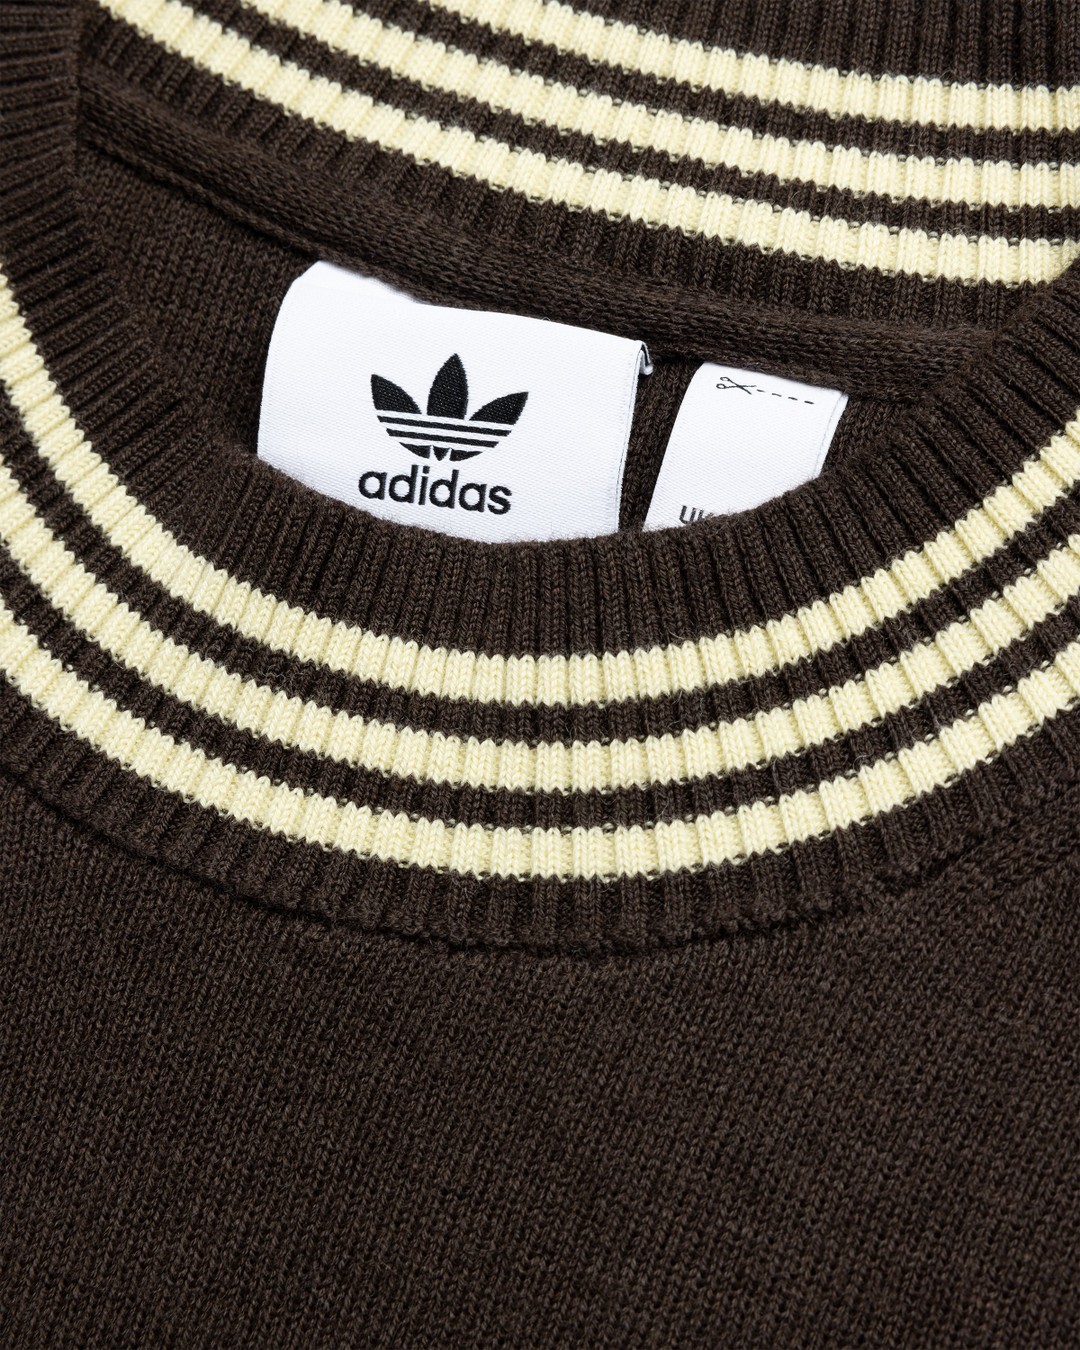 Adidas x Wales Bonner – Knit Long-Sleeve Top Dark Brown - Longsleeves - Brown - Image 6